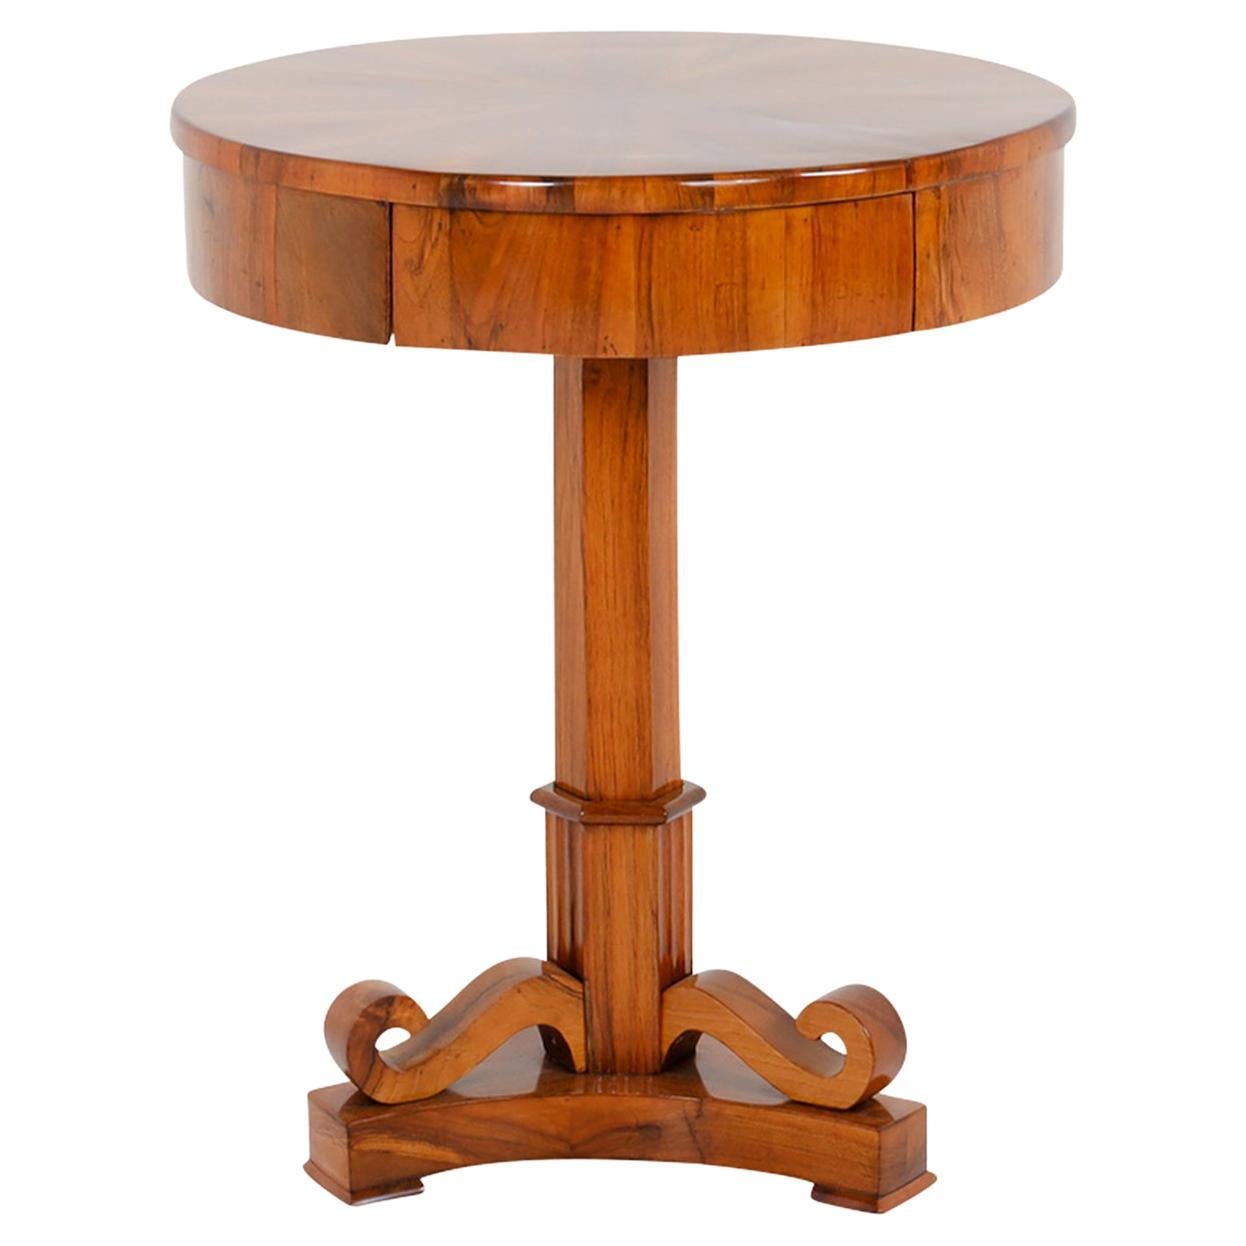 19th Century German Biedermeier Veneered Walnut Side Table, Antique Corner Table